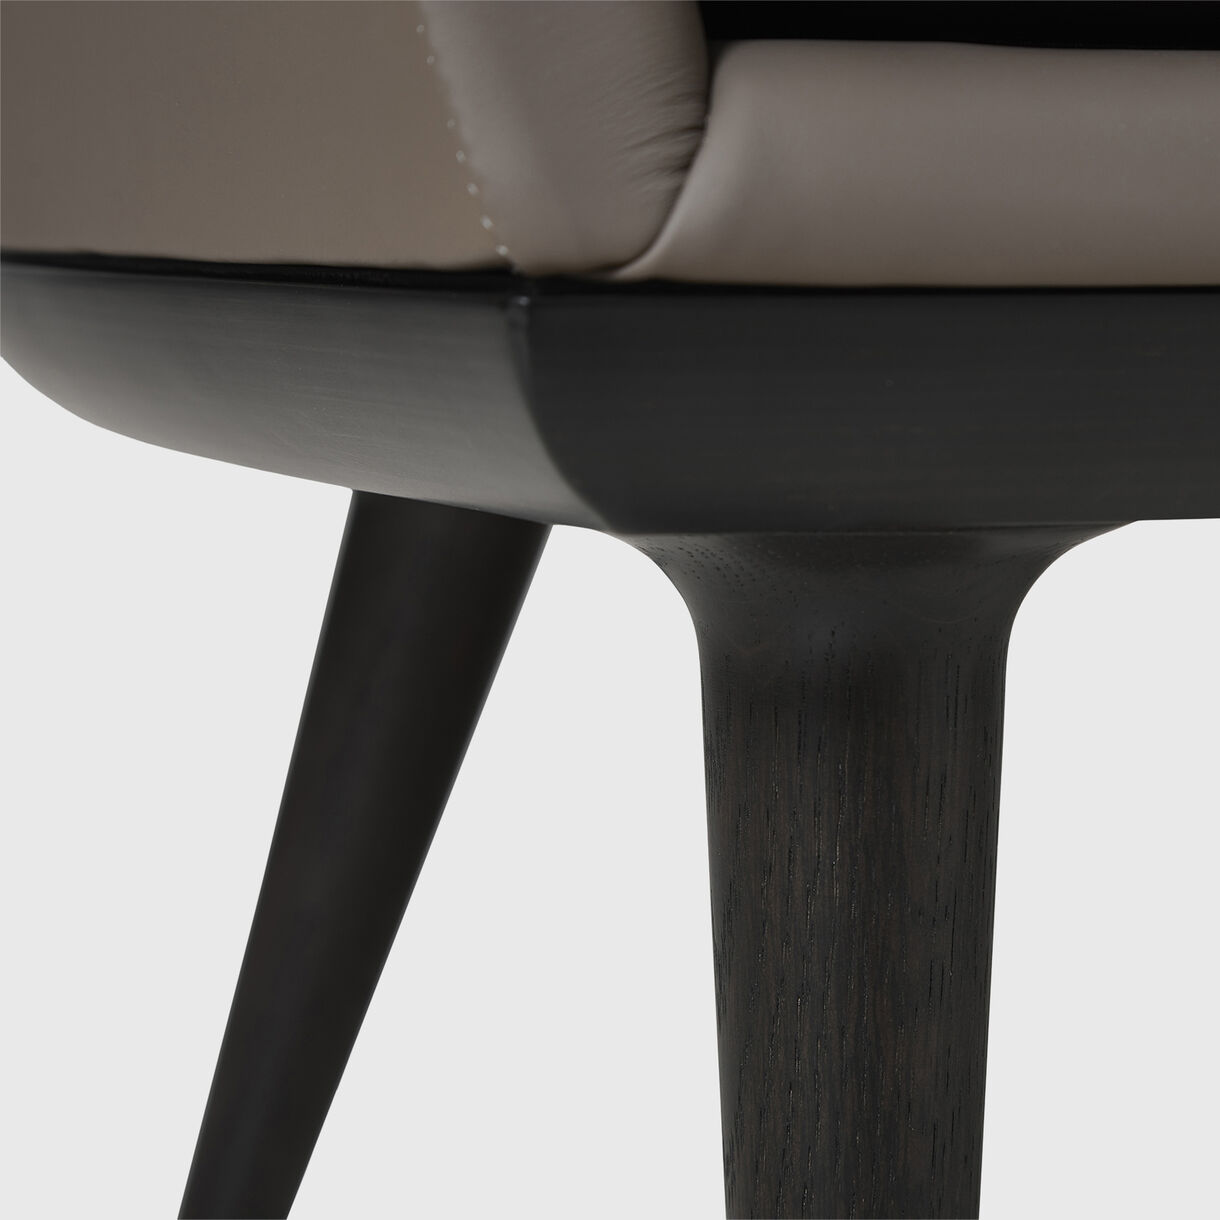 Lunar High Back Chair, Onyx Oak, Bellagio Leather - Quartz 5070